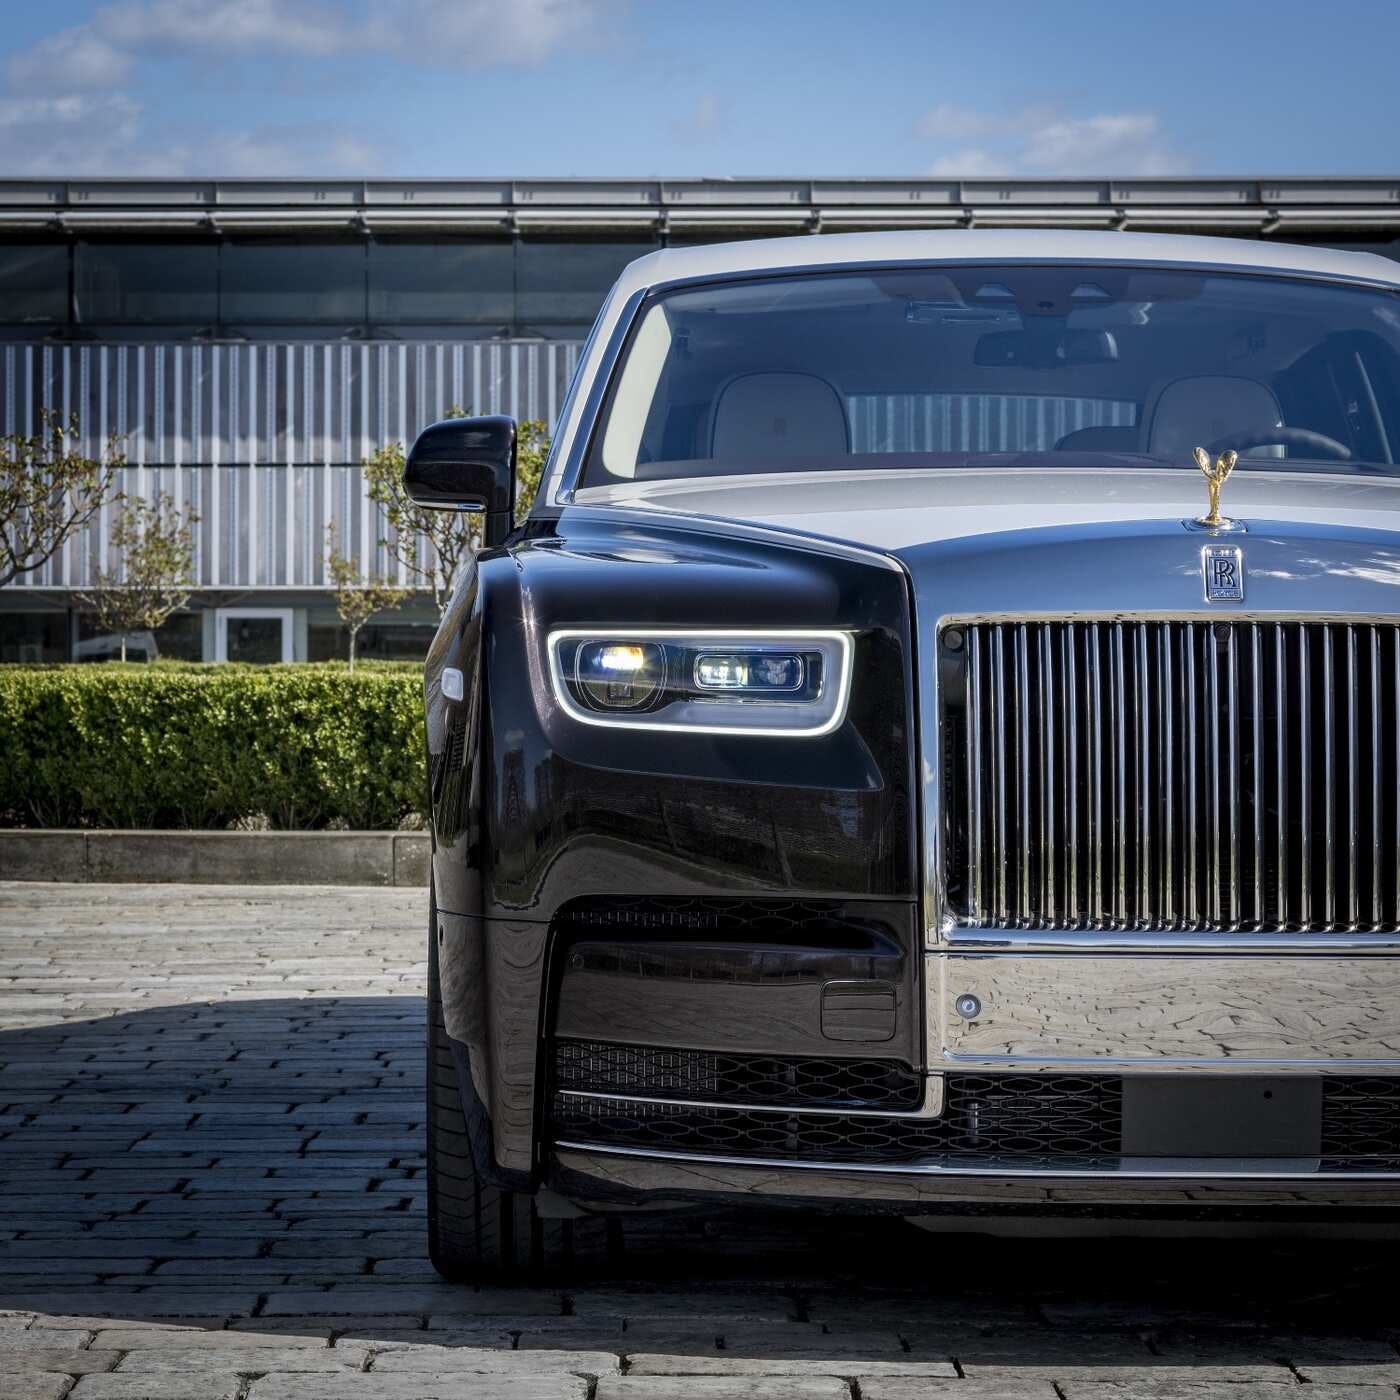 2022 Rolls-Royce Phantom Review  Pricing, Trims & Photos - TrueCar